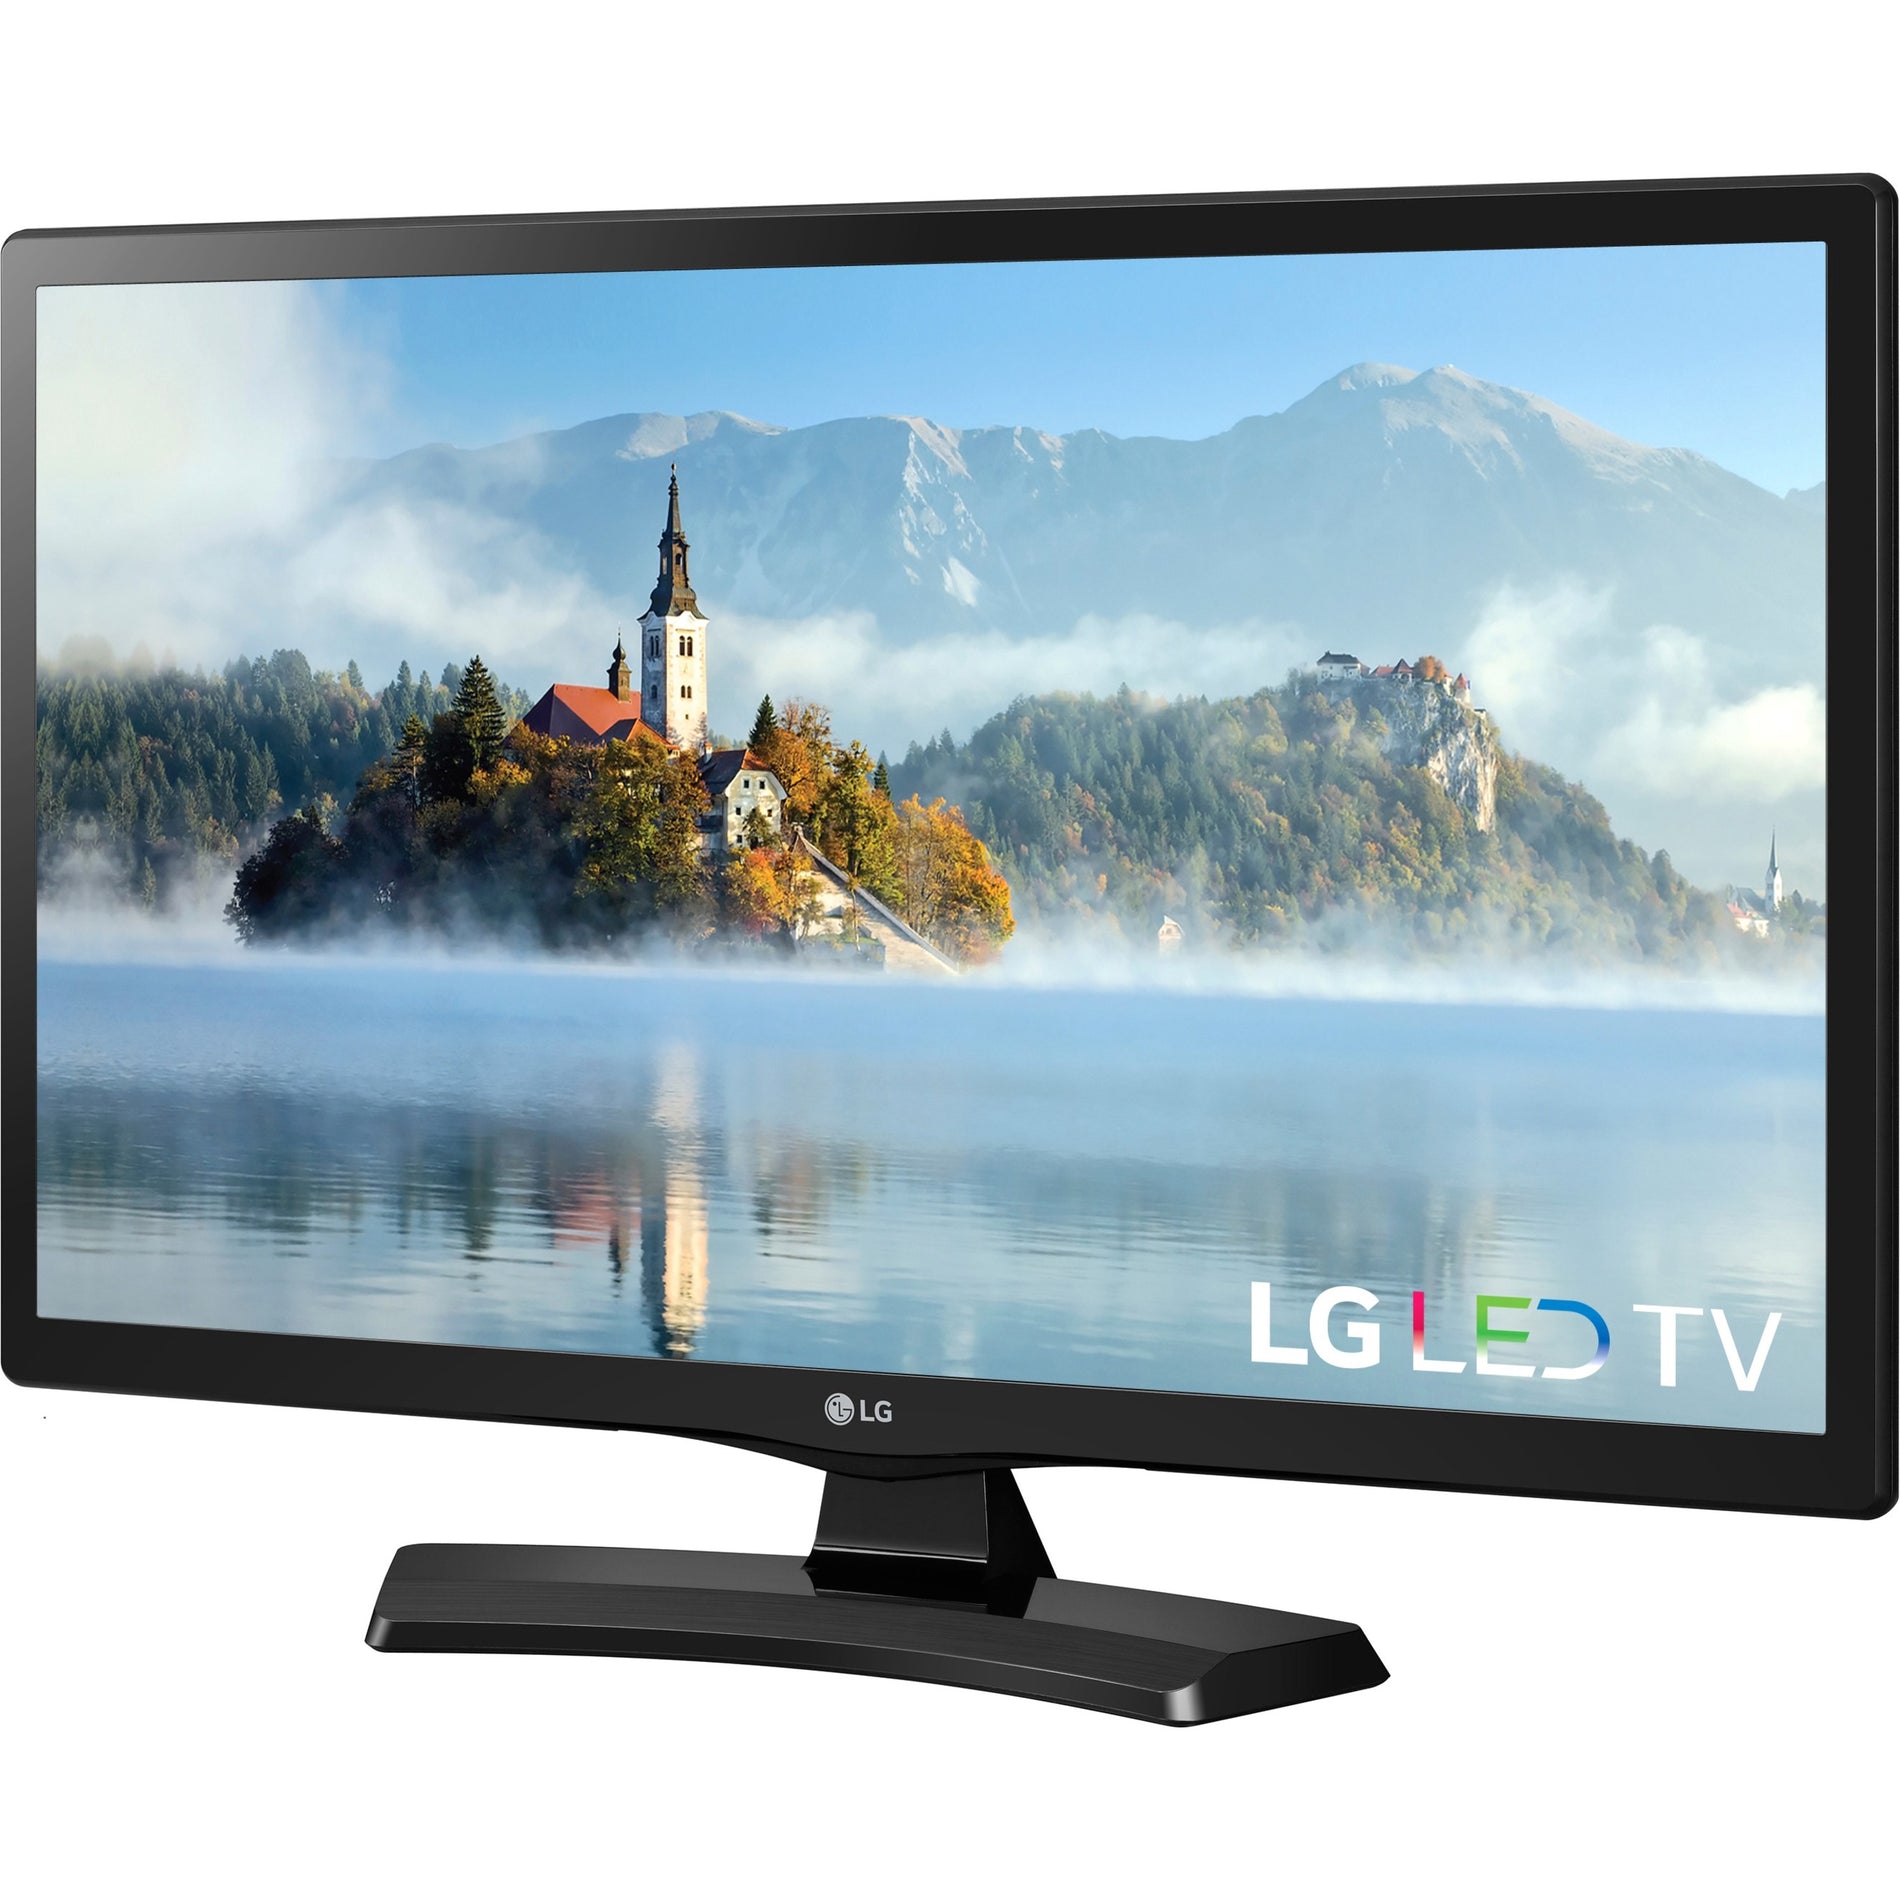 LG 24LJ4540 24" LED-LCD TV, HDTV, LED Backlight, 1366 x 768 Resolution